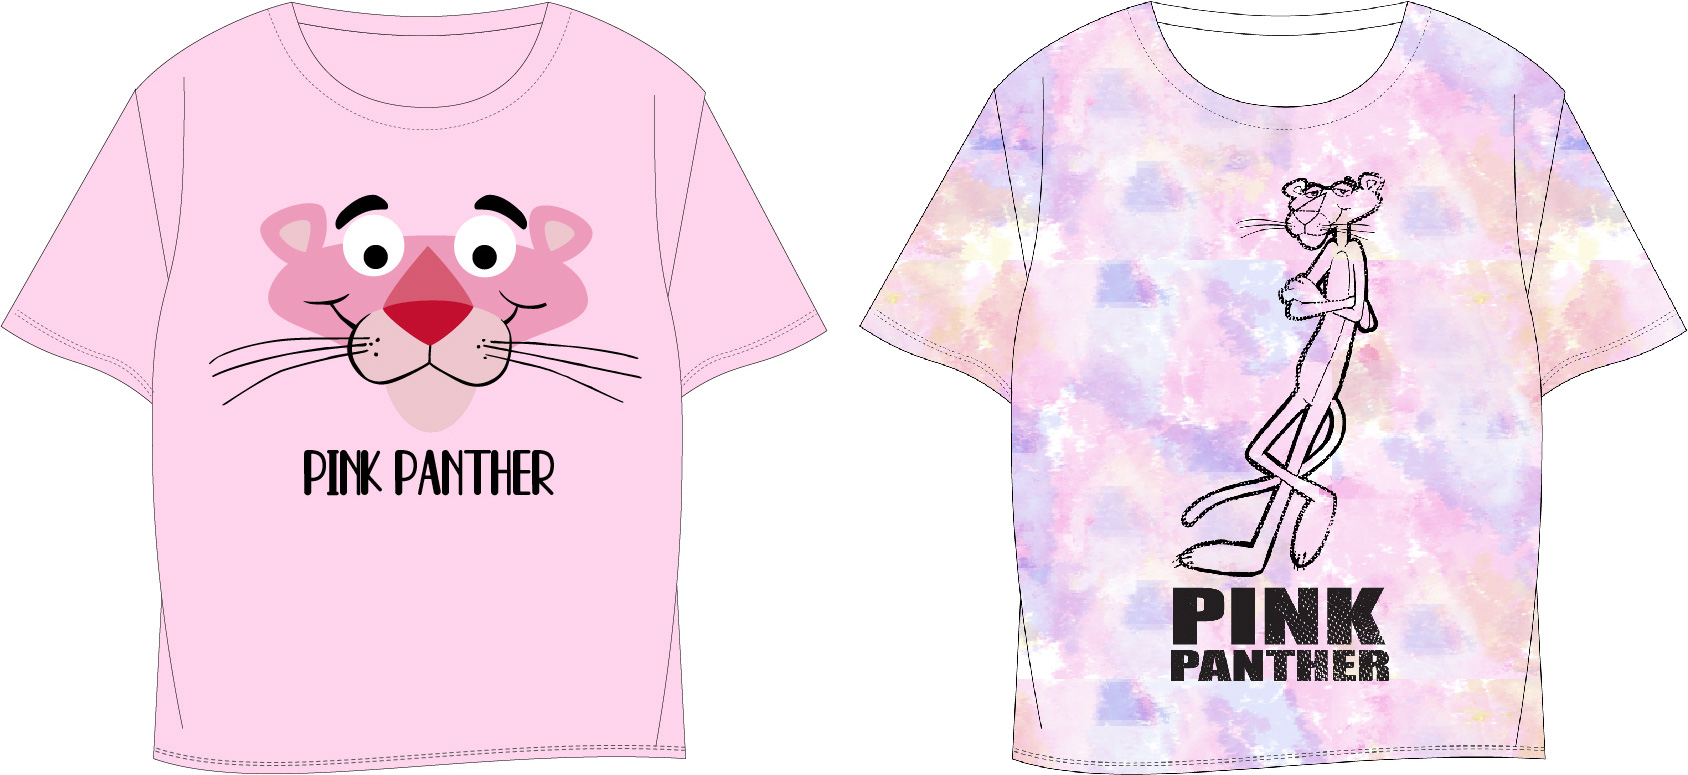 Růžový panter - licence Dívčí tričko - Růžový panter 5202068, fialková / batika Barva: Fialková, Velikost: 164